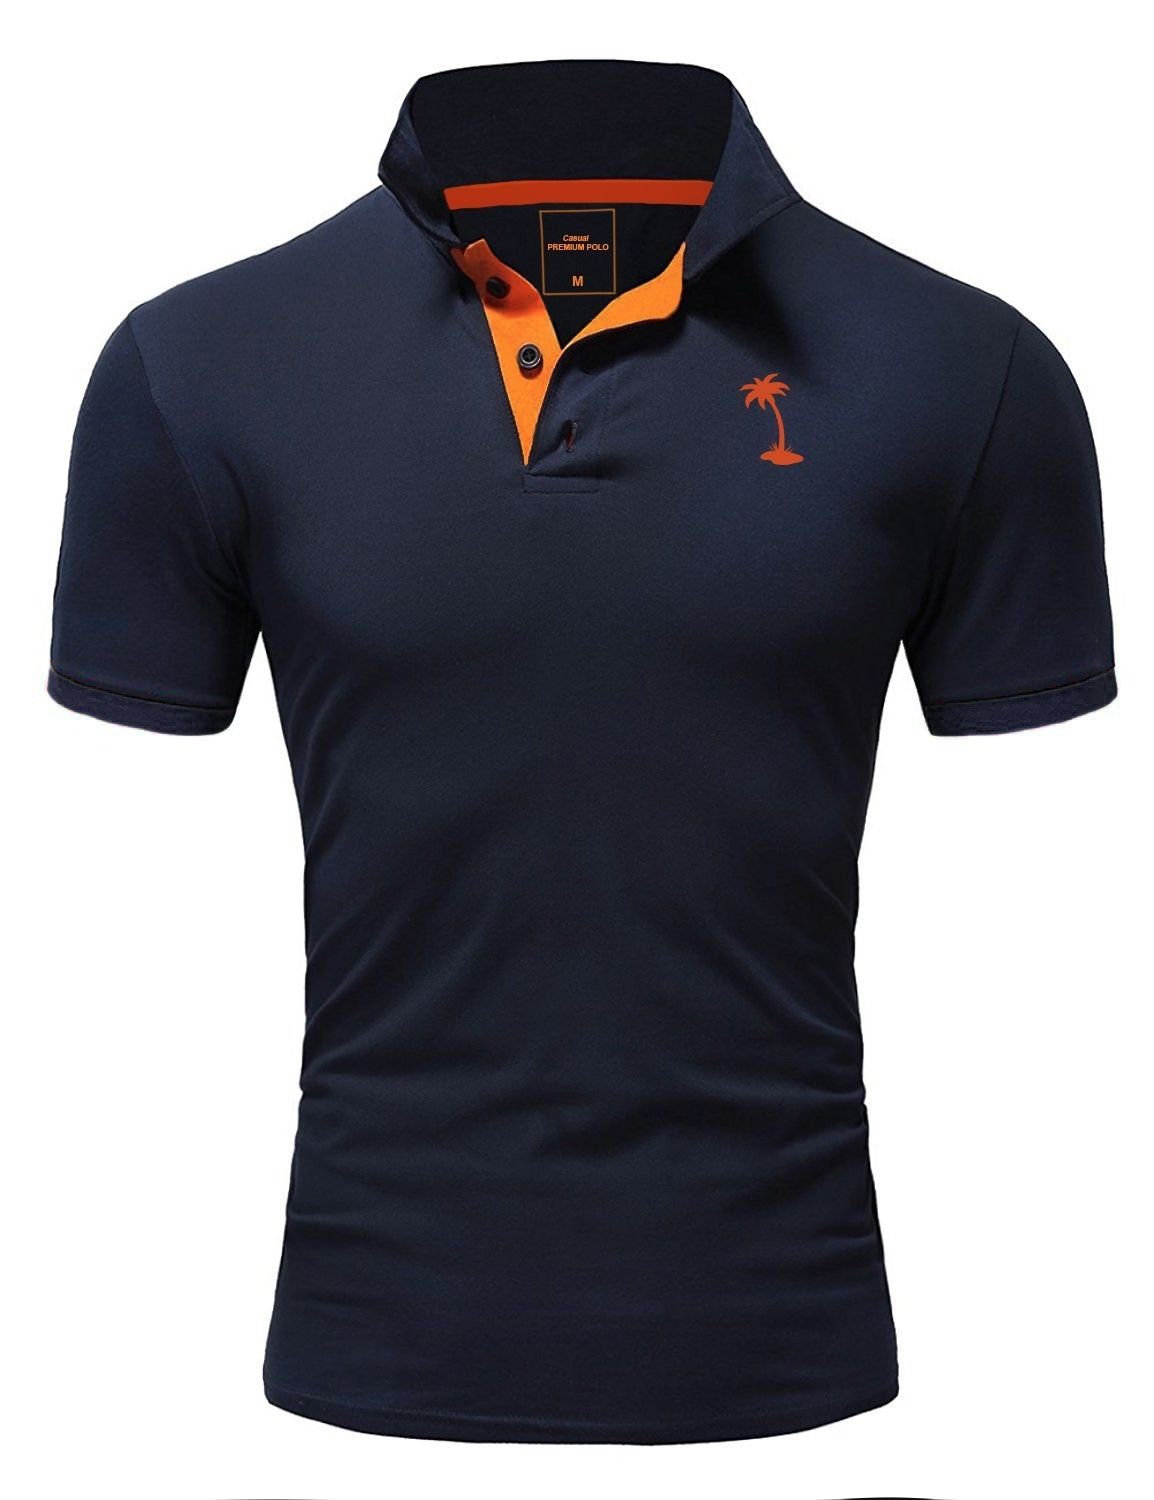 PALMSON kontrastfarbigen mit Poloshirt behype dunkelblau-orange Details